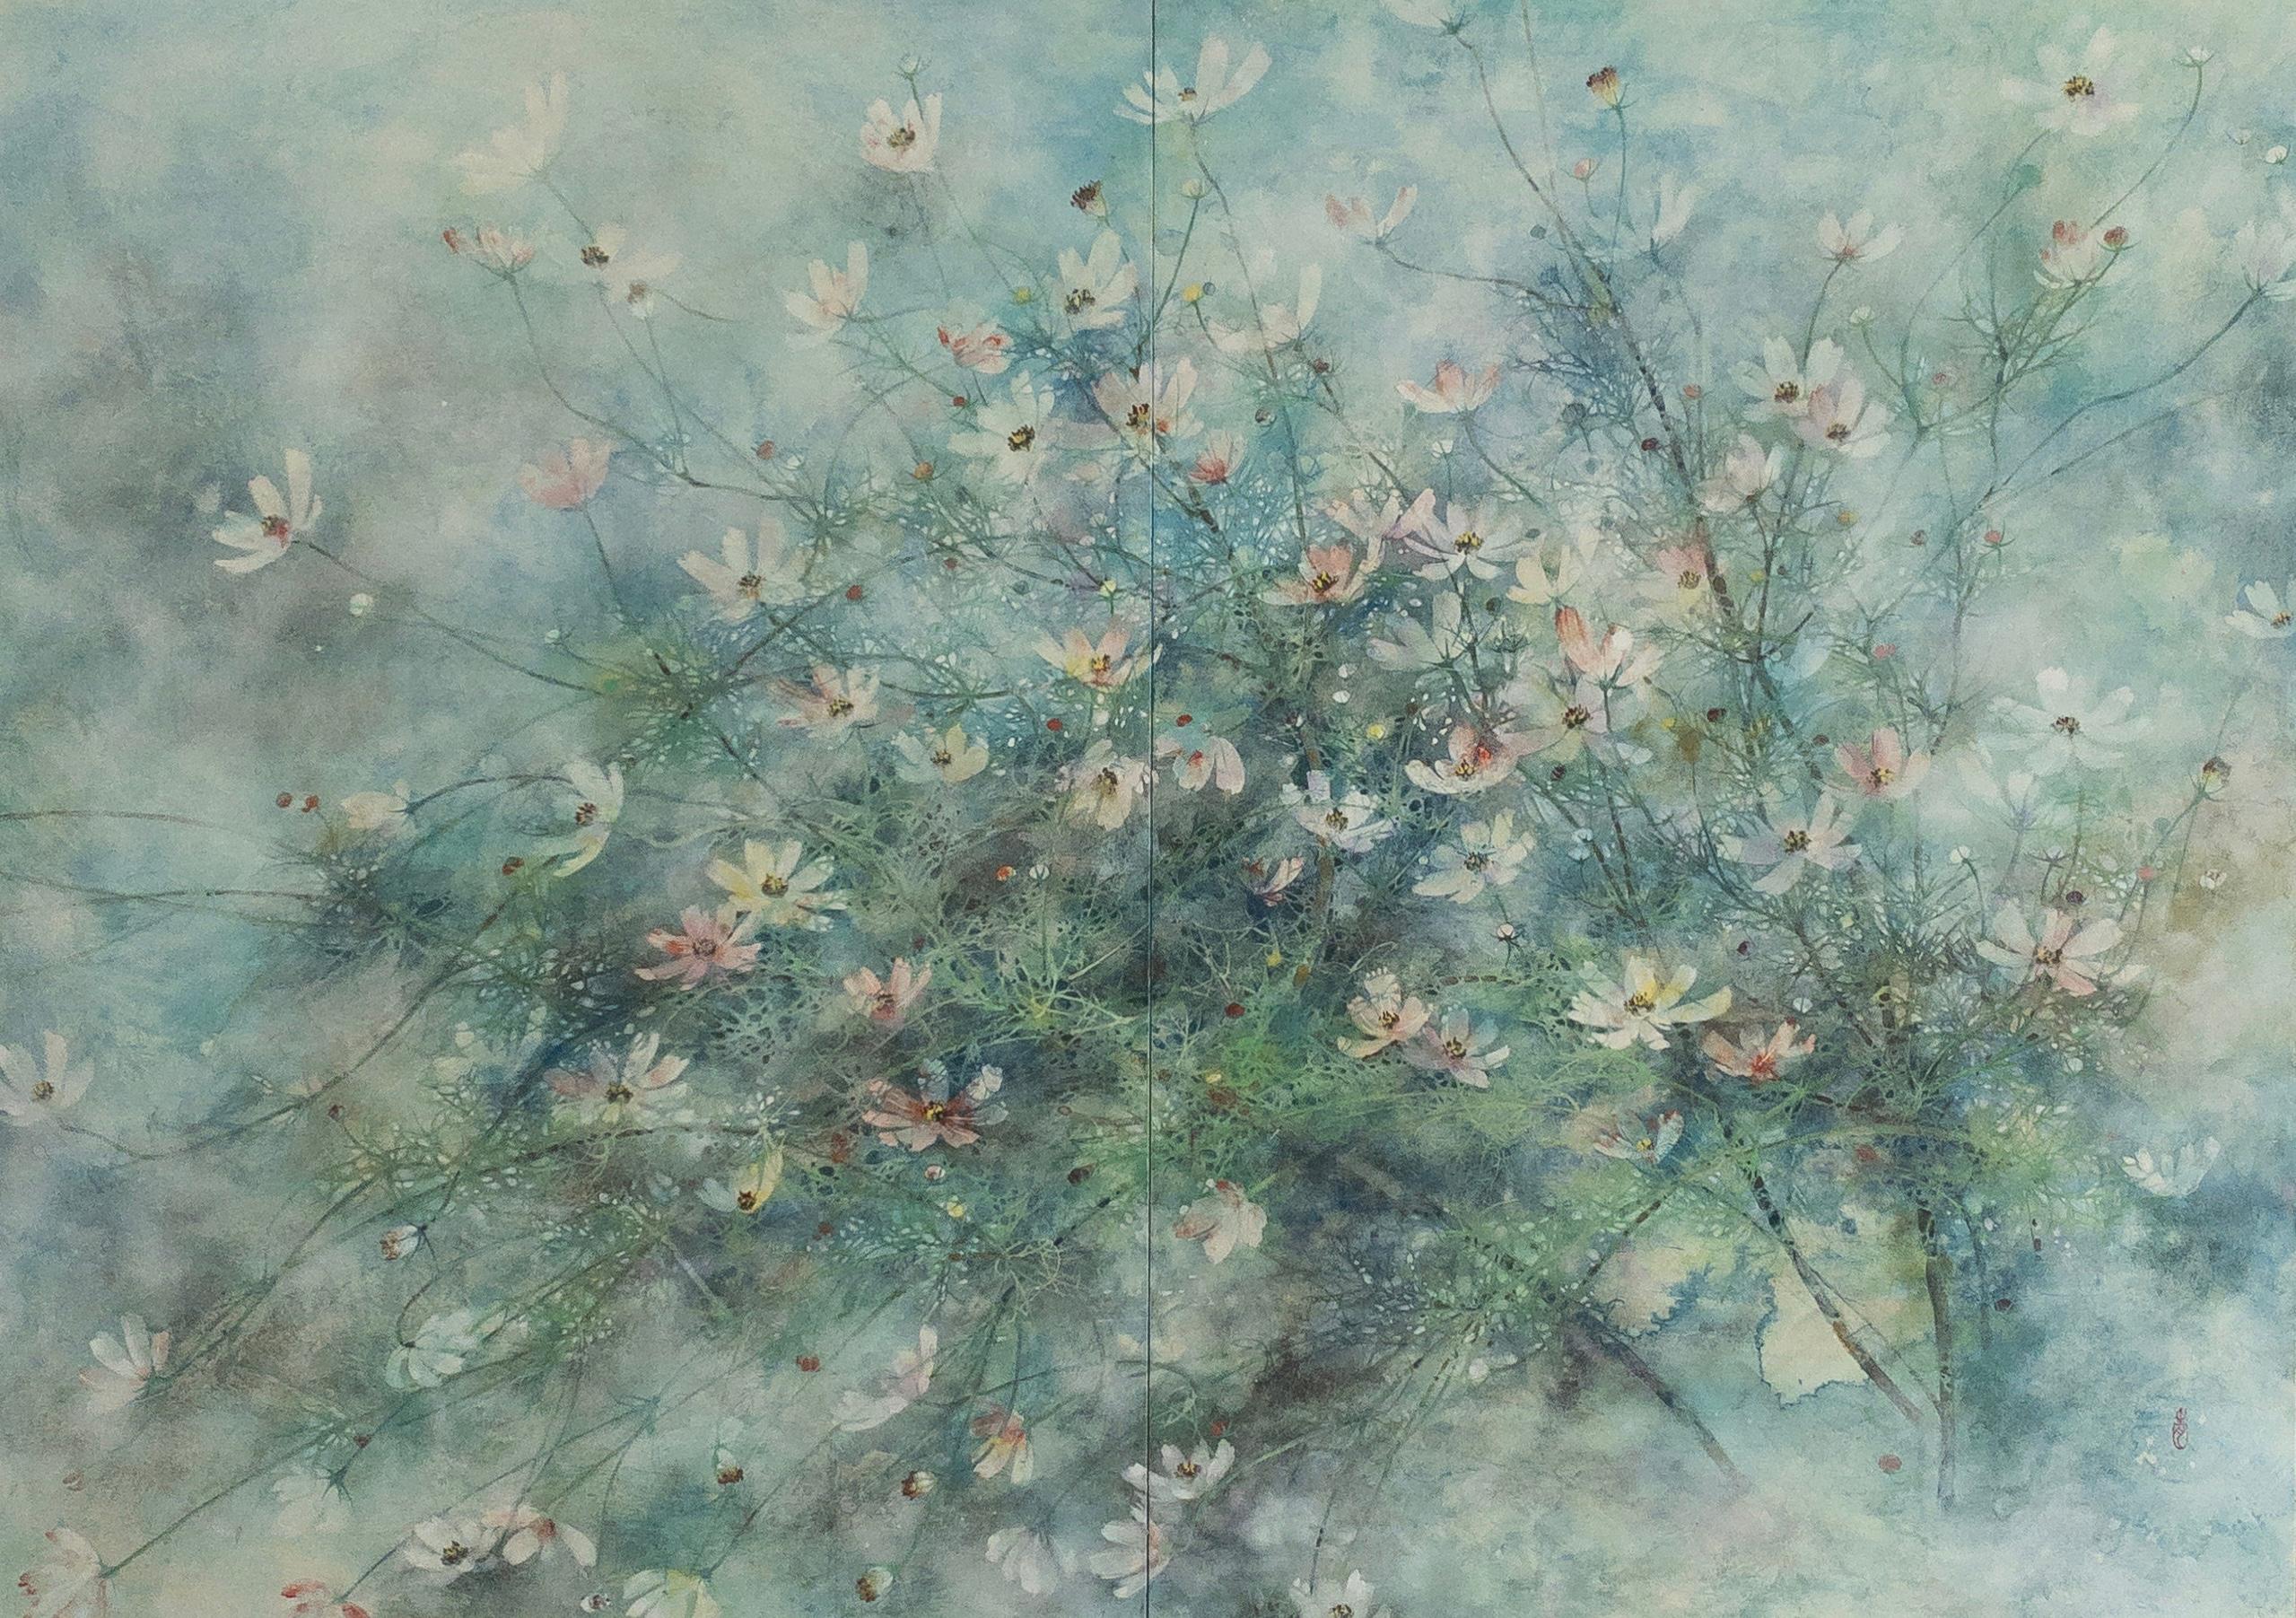 Hope by CHEN Yiching - Peinture contemporaine Nihonga, fleurs de cosmos, bleu